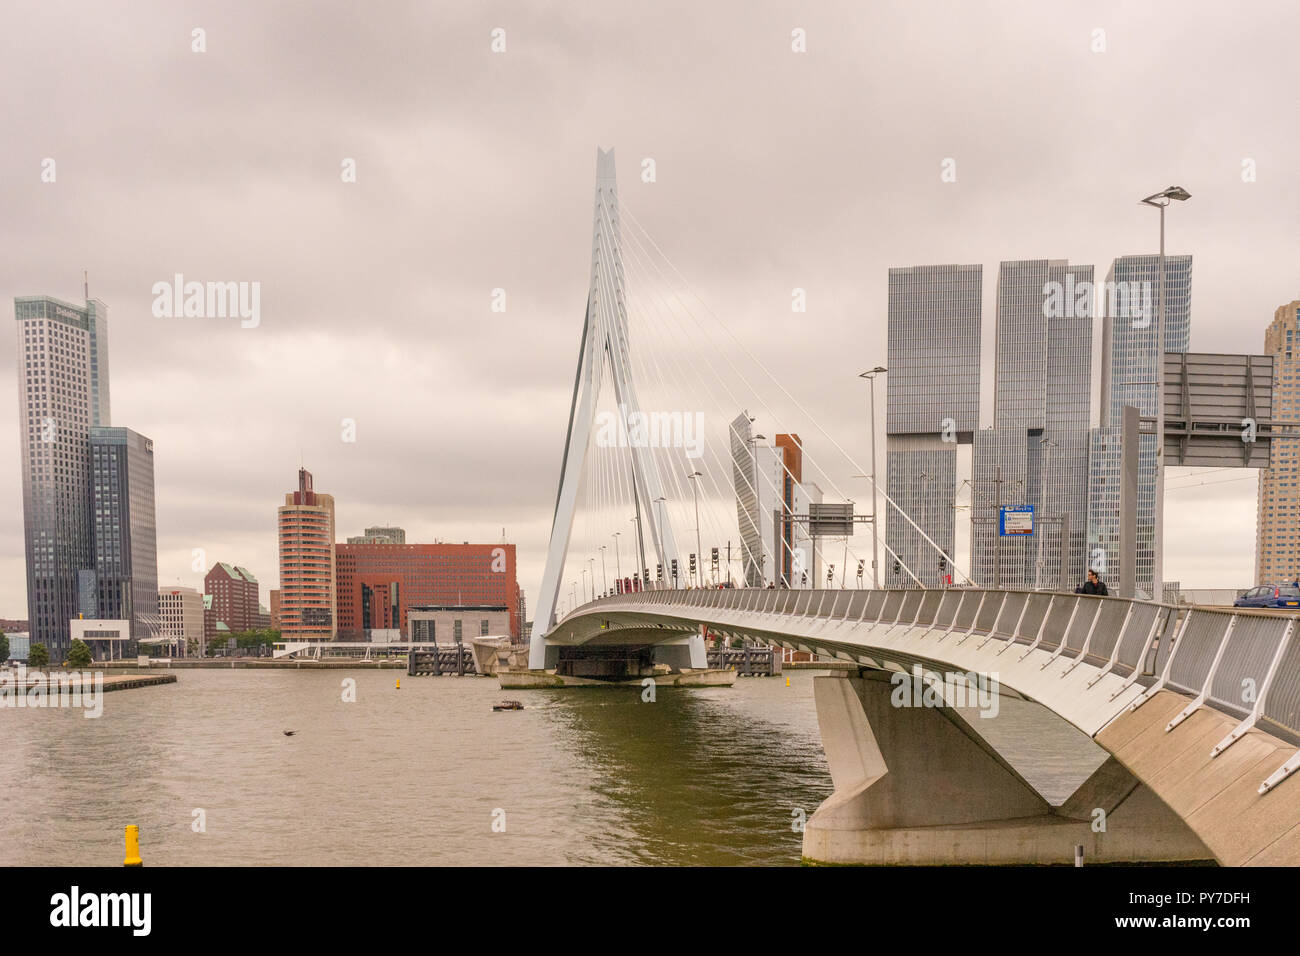 Rotterdam, Paesi Bassi - 16 July, 2016: La Deloitte edificio si affaccia sul ponte Erasmus. La 284m lungo il ponte è stato progettato da Ben van Berkel (UNSt Foto Stock